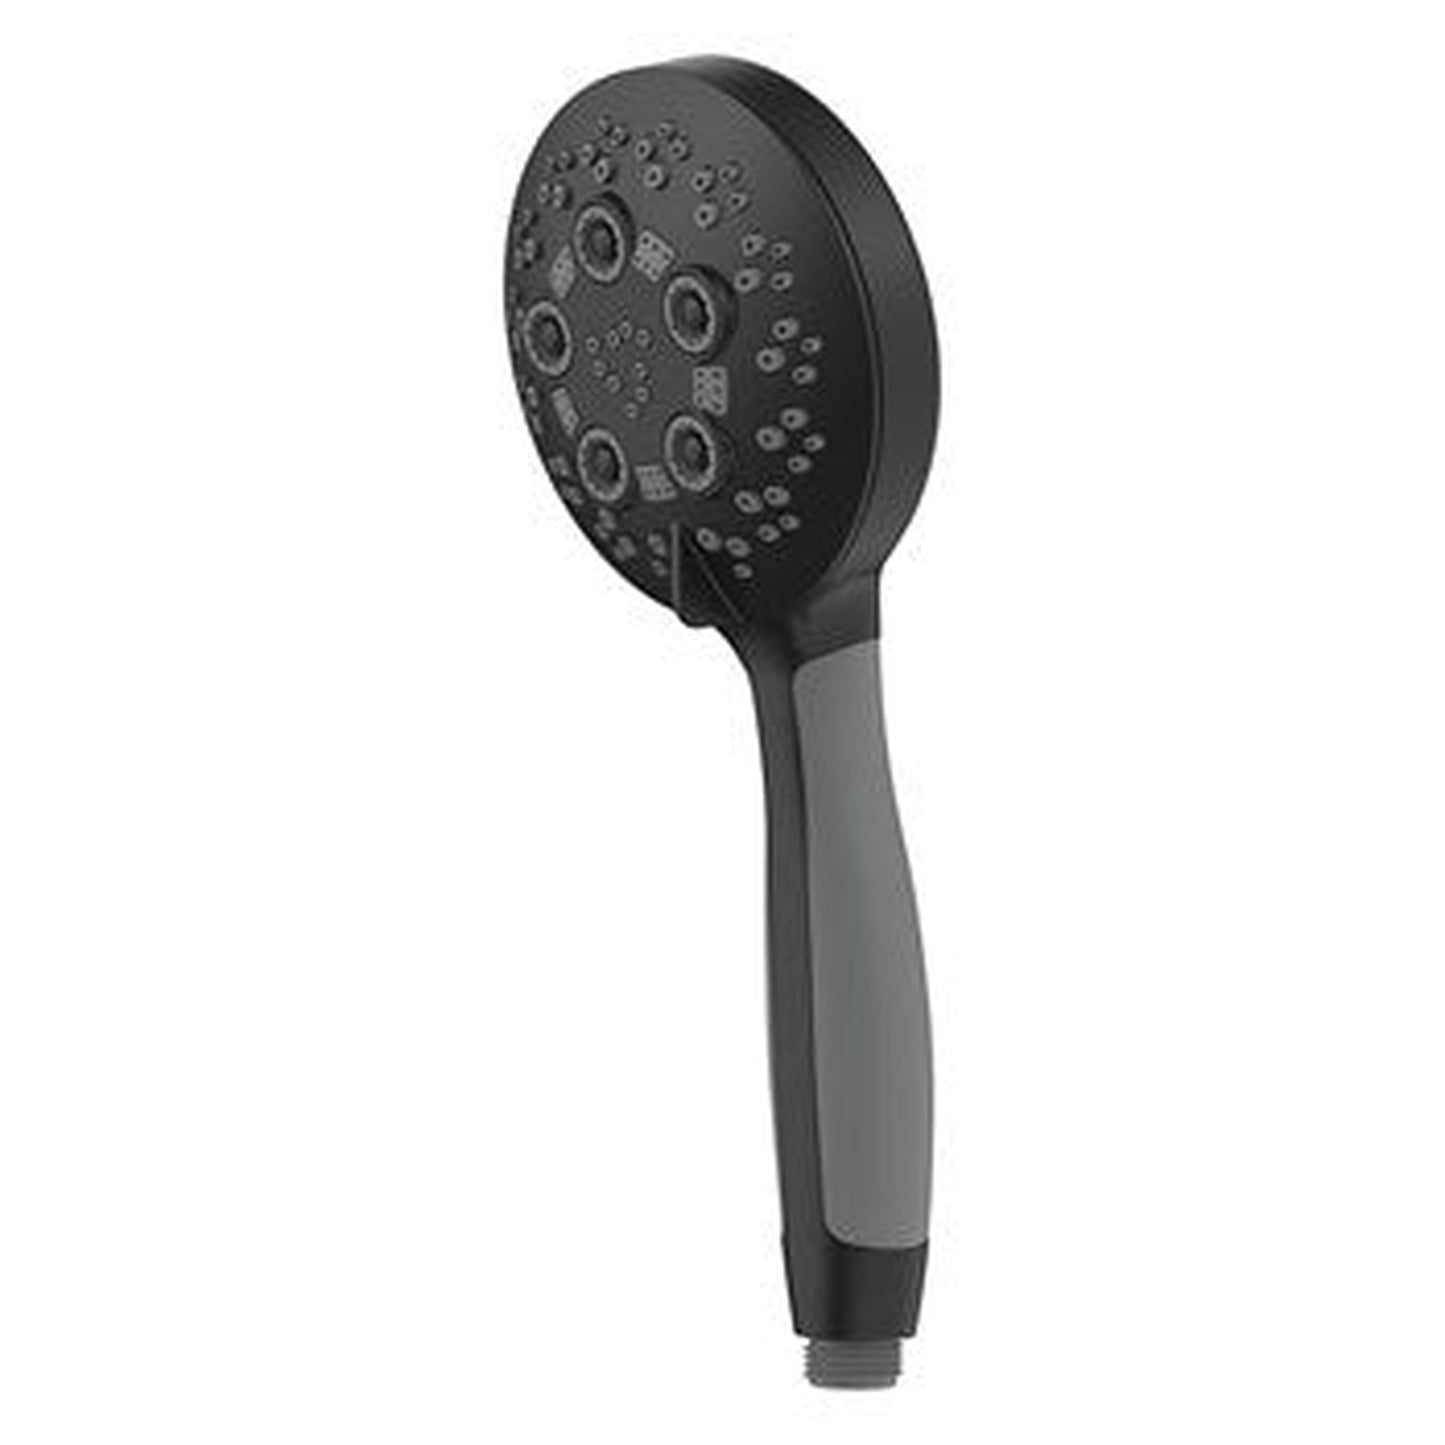 Speakman Rio 1.75 GPM 5-Spray Pattern Handheld Matte Black Shower Head